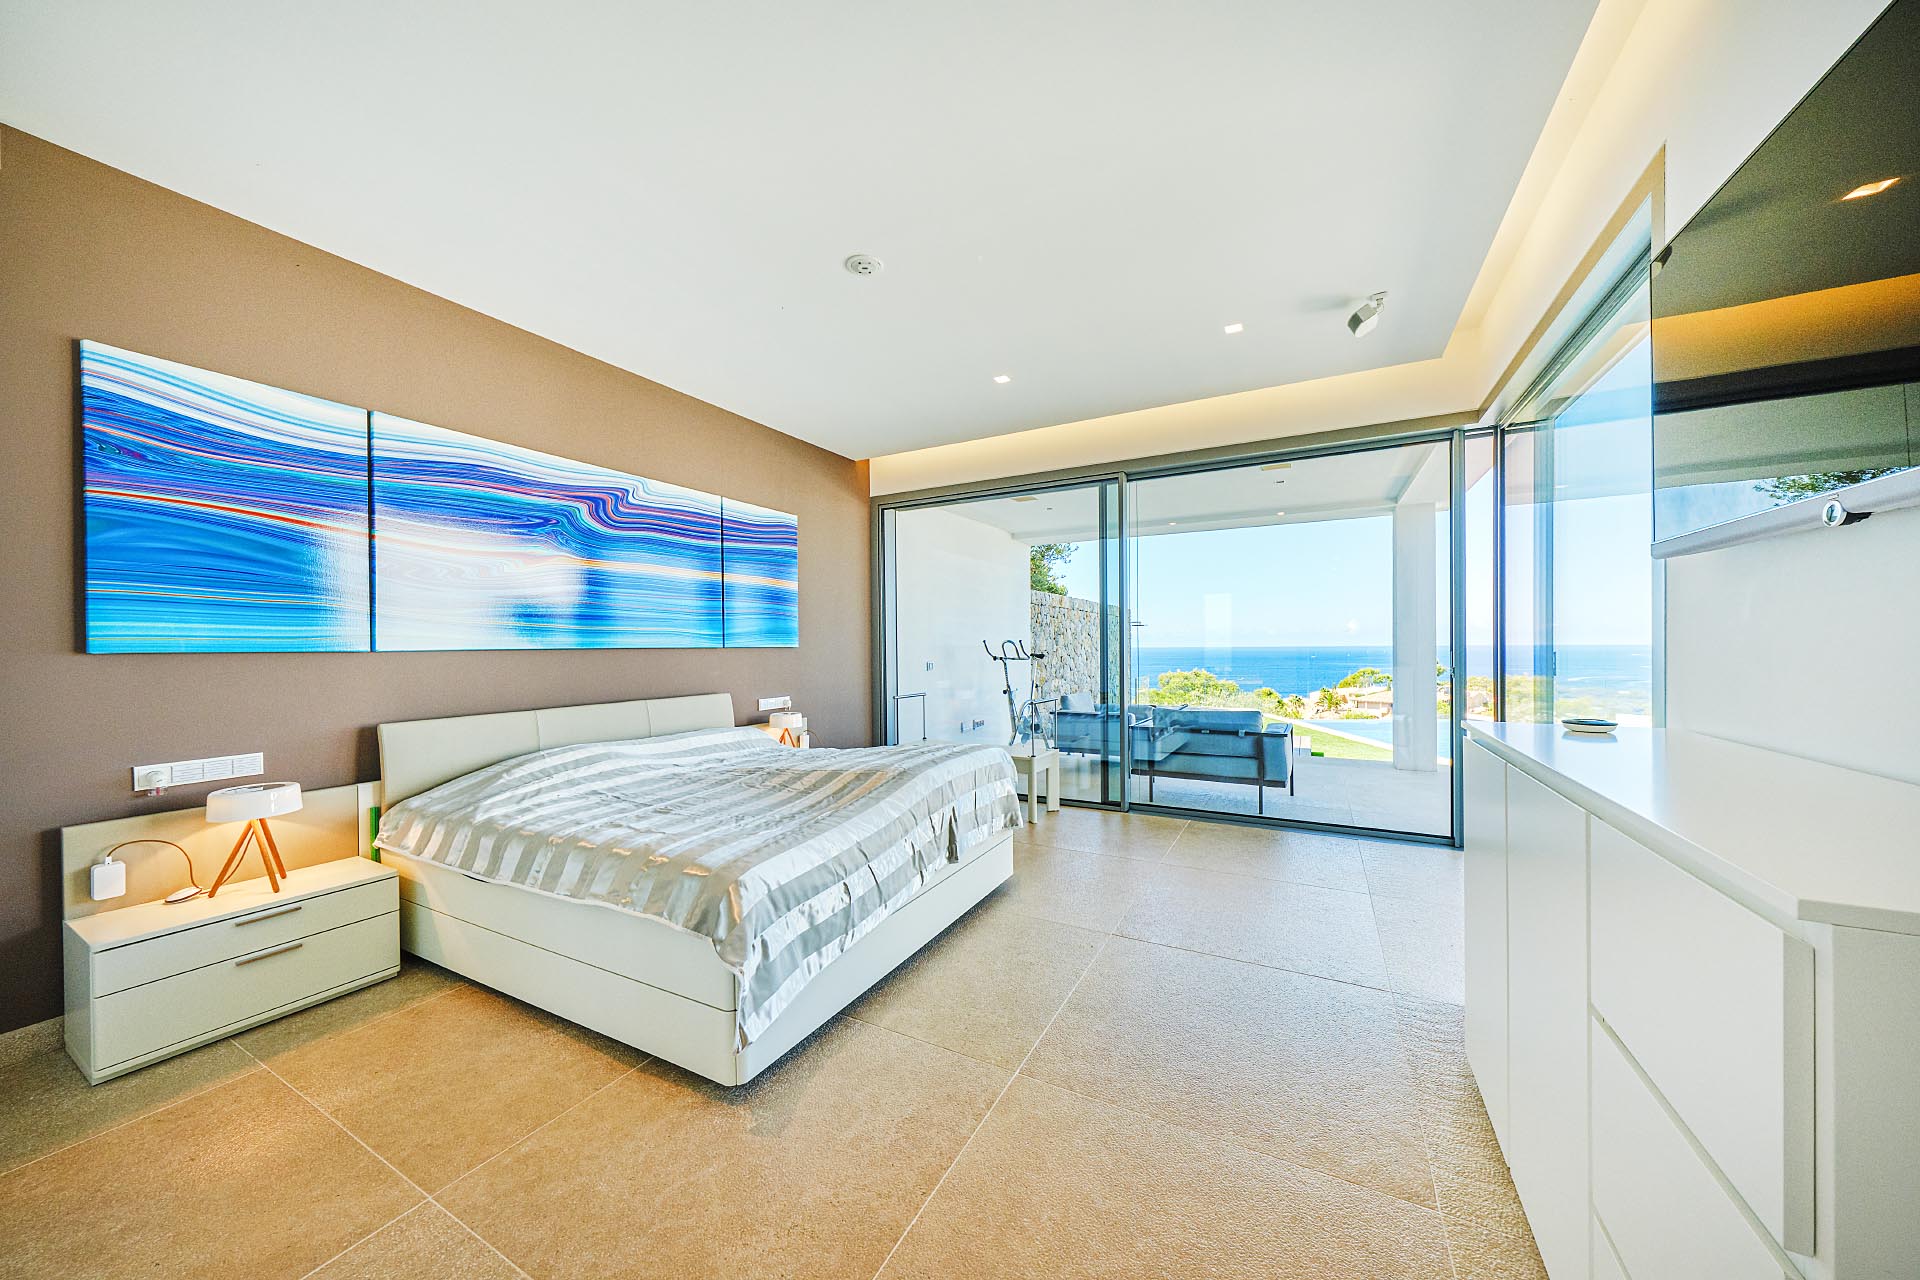 Excepcional Villa con fantásticas vistas al mar - Dormitorio amplio